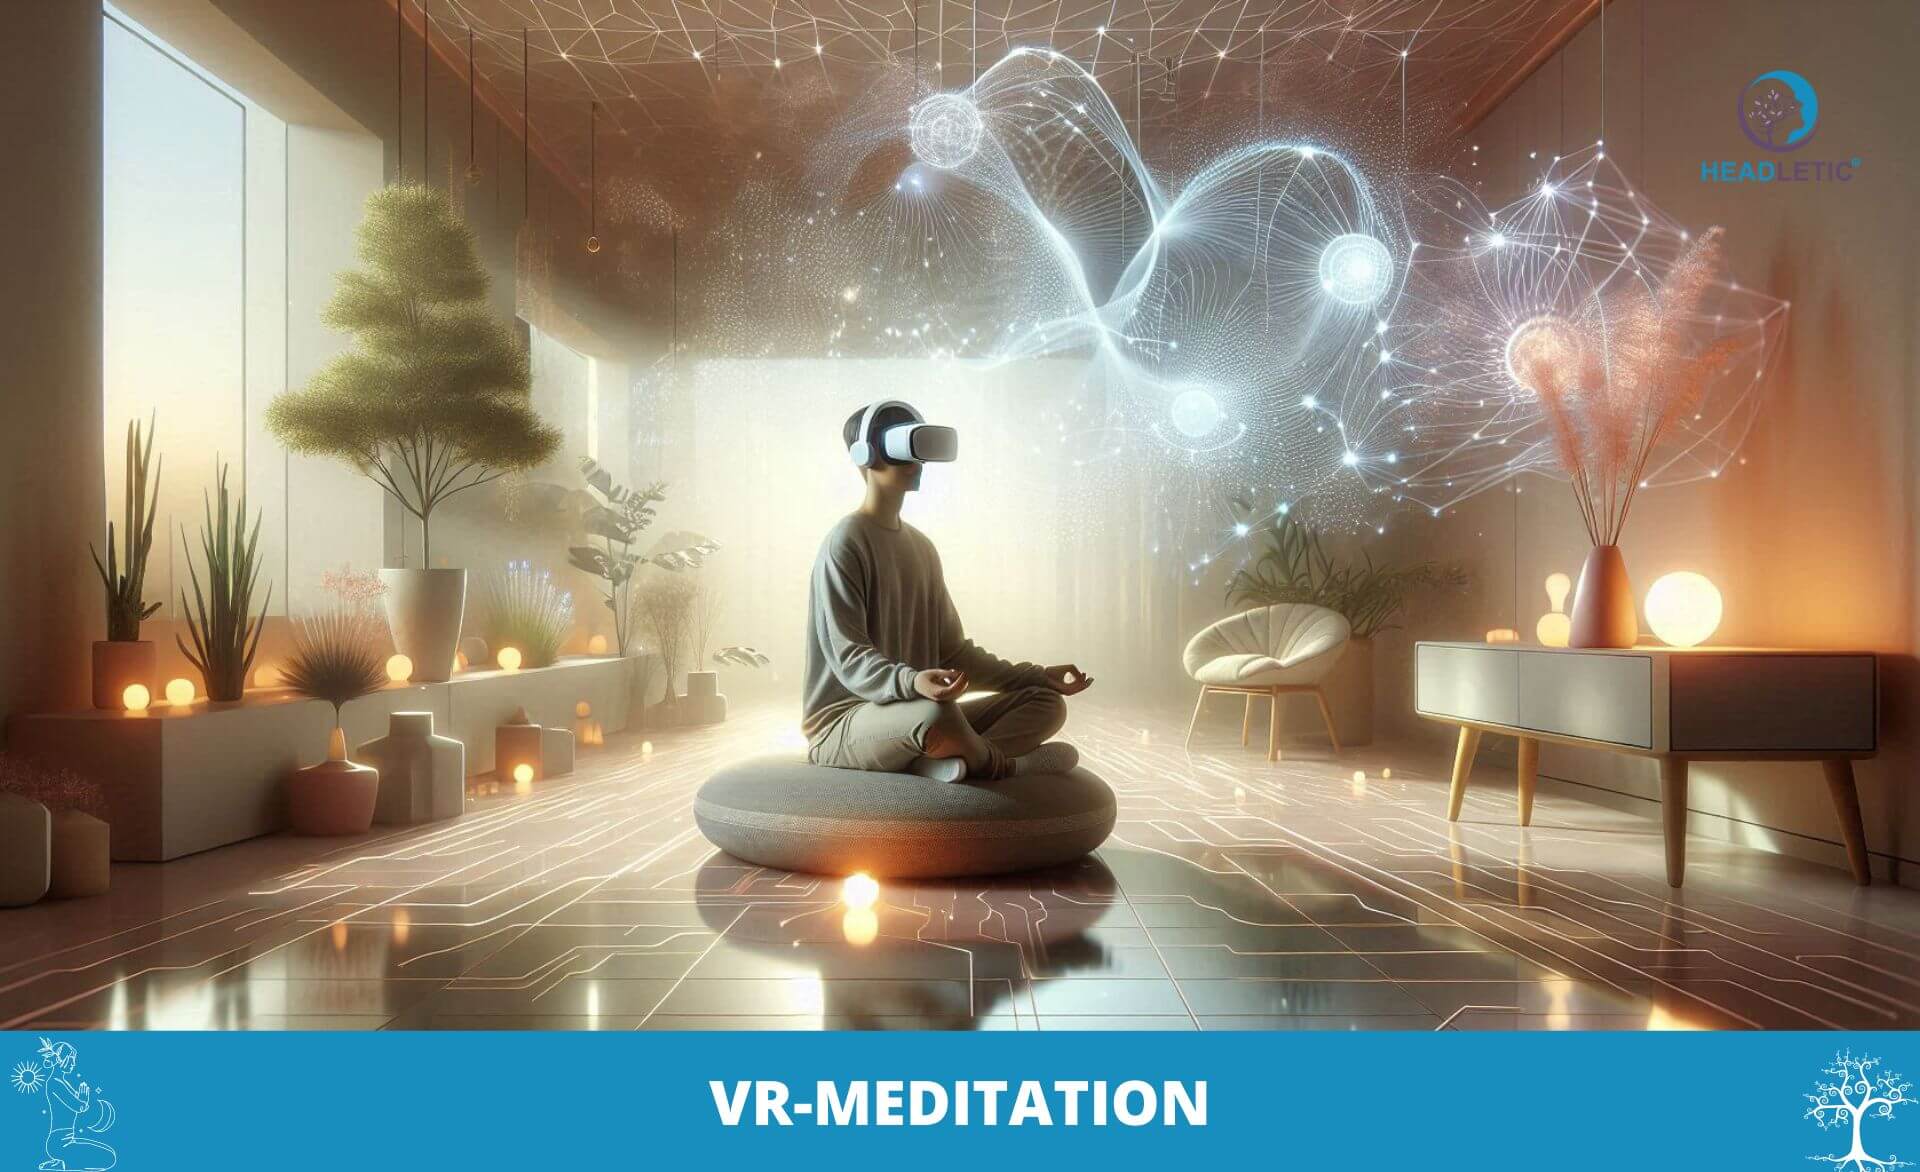 Eine Person mit einem VR-Headset meditiert in einem futuristischen, ruhigen Raum mit holografischen Elementen und verkörpert damit die Essenz der VR-Meditation. Das Bild trägt unten die Beschriftung „VR-Meditation“.